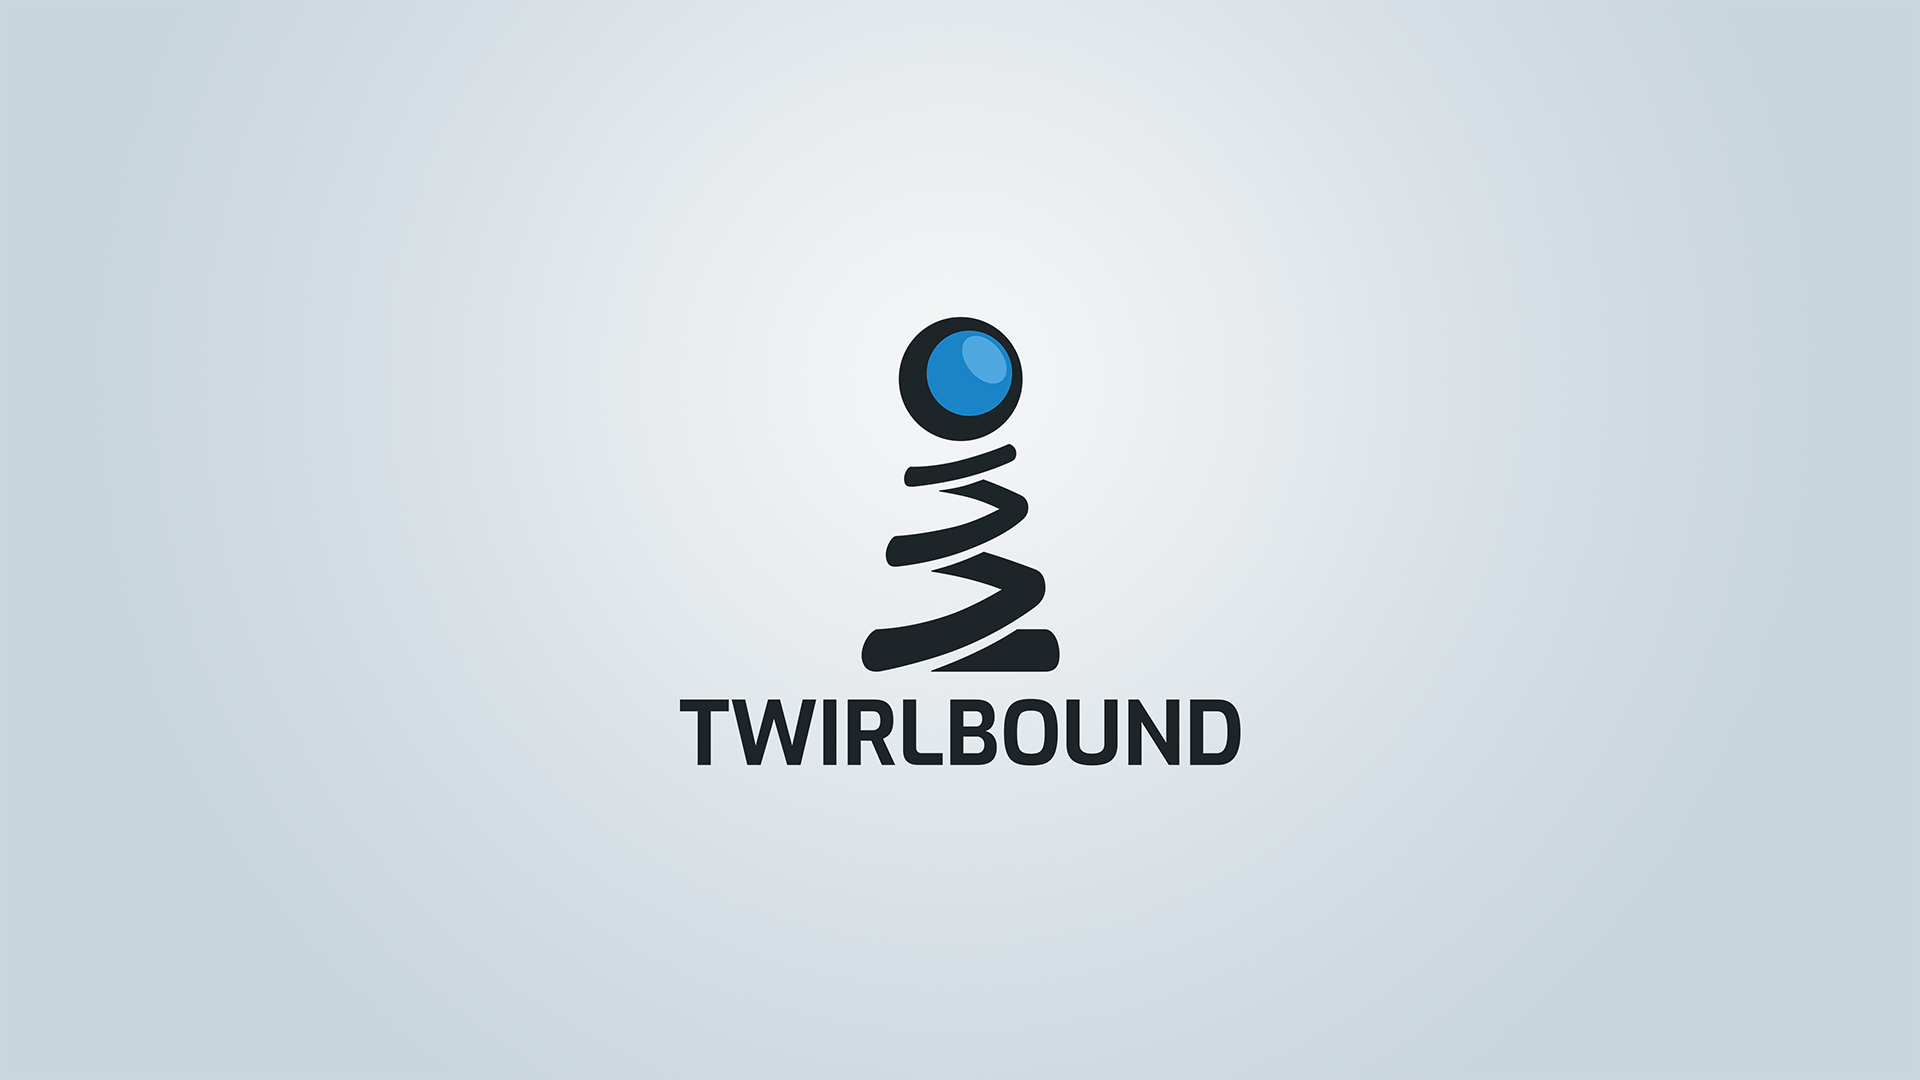 Twirlbound_NormalOnLight_1920x1080.png